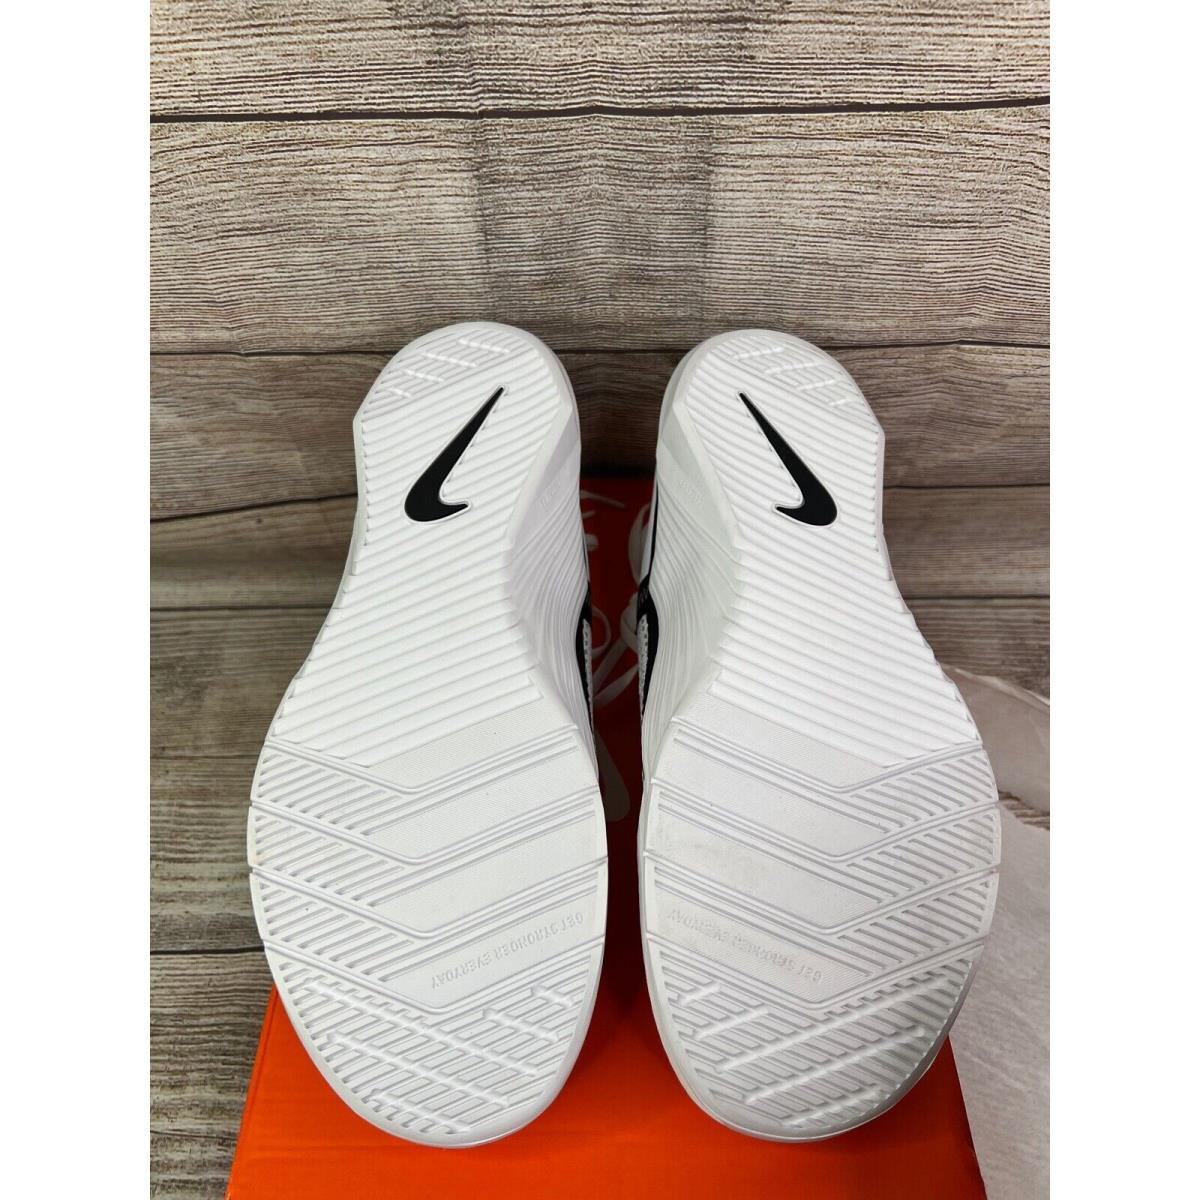 Nike shoes Metcon - White / Black 10